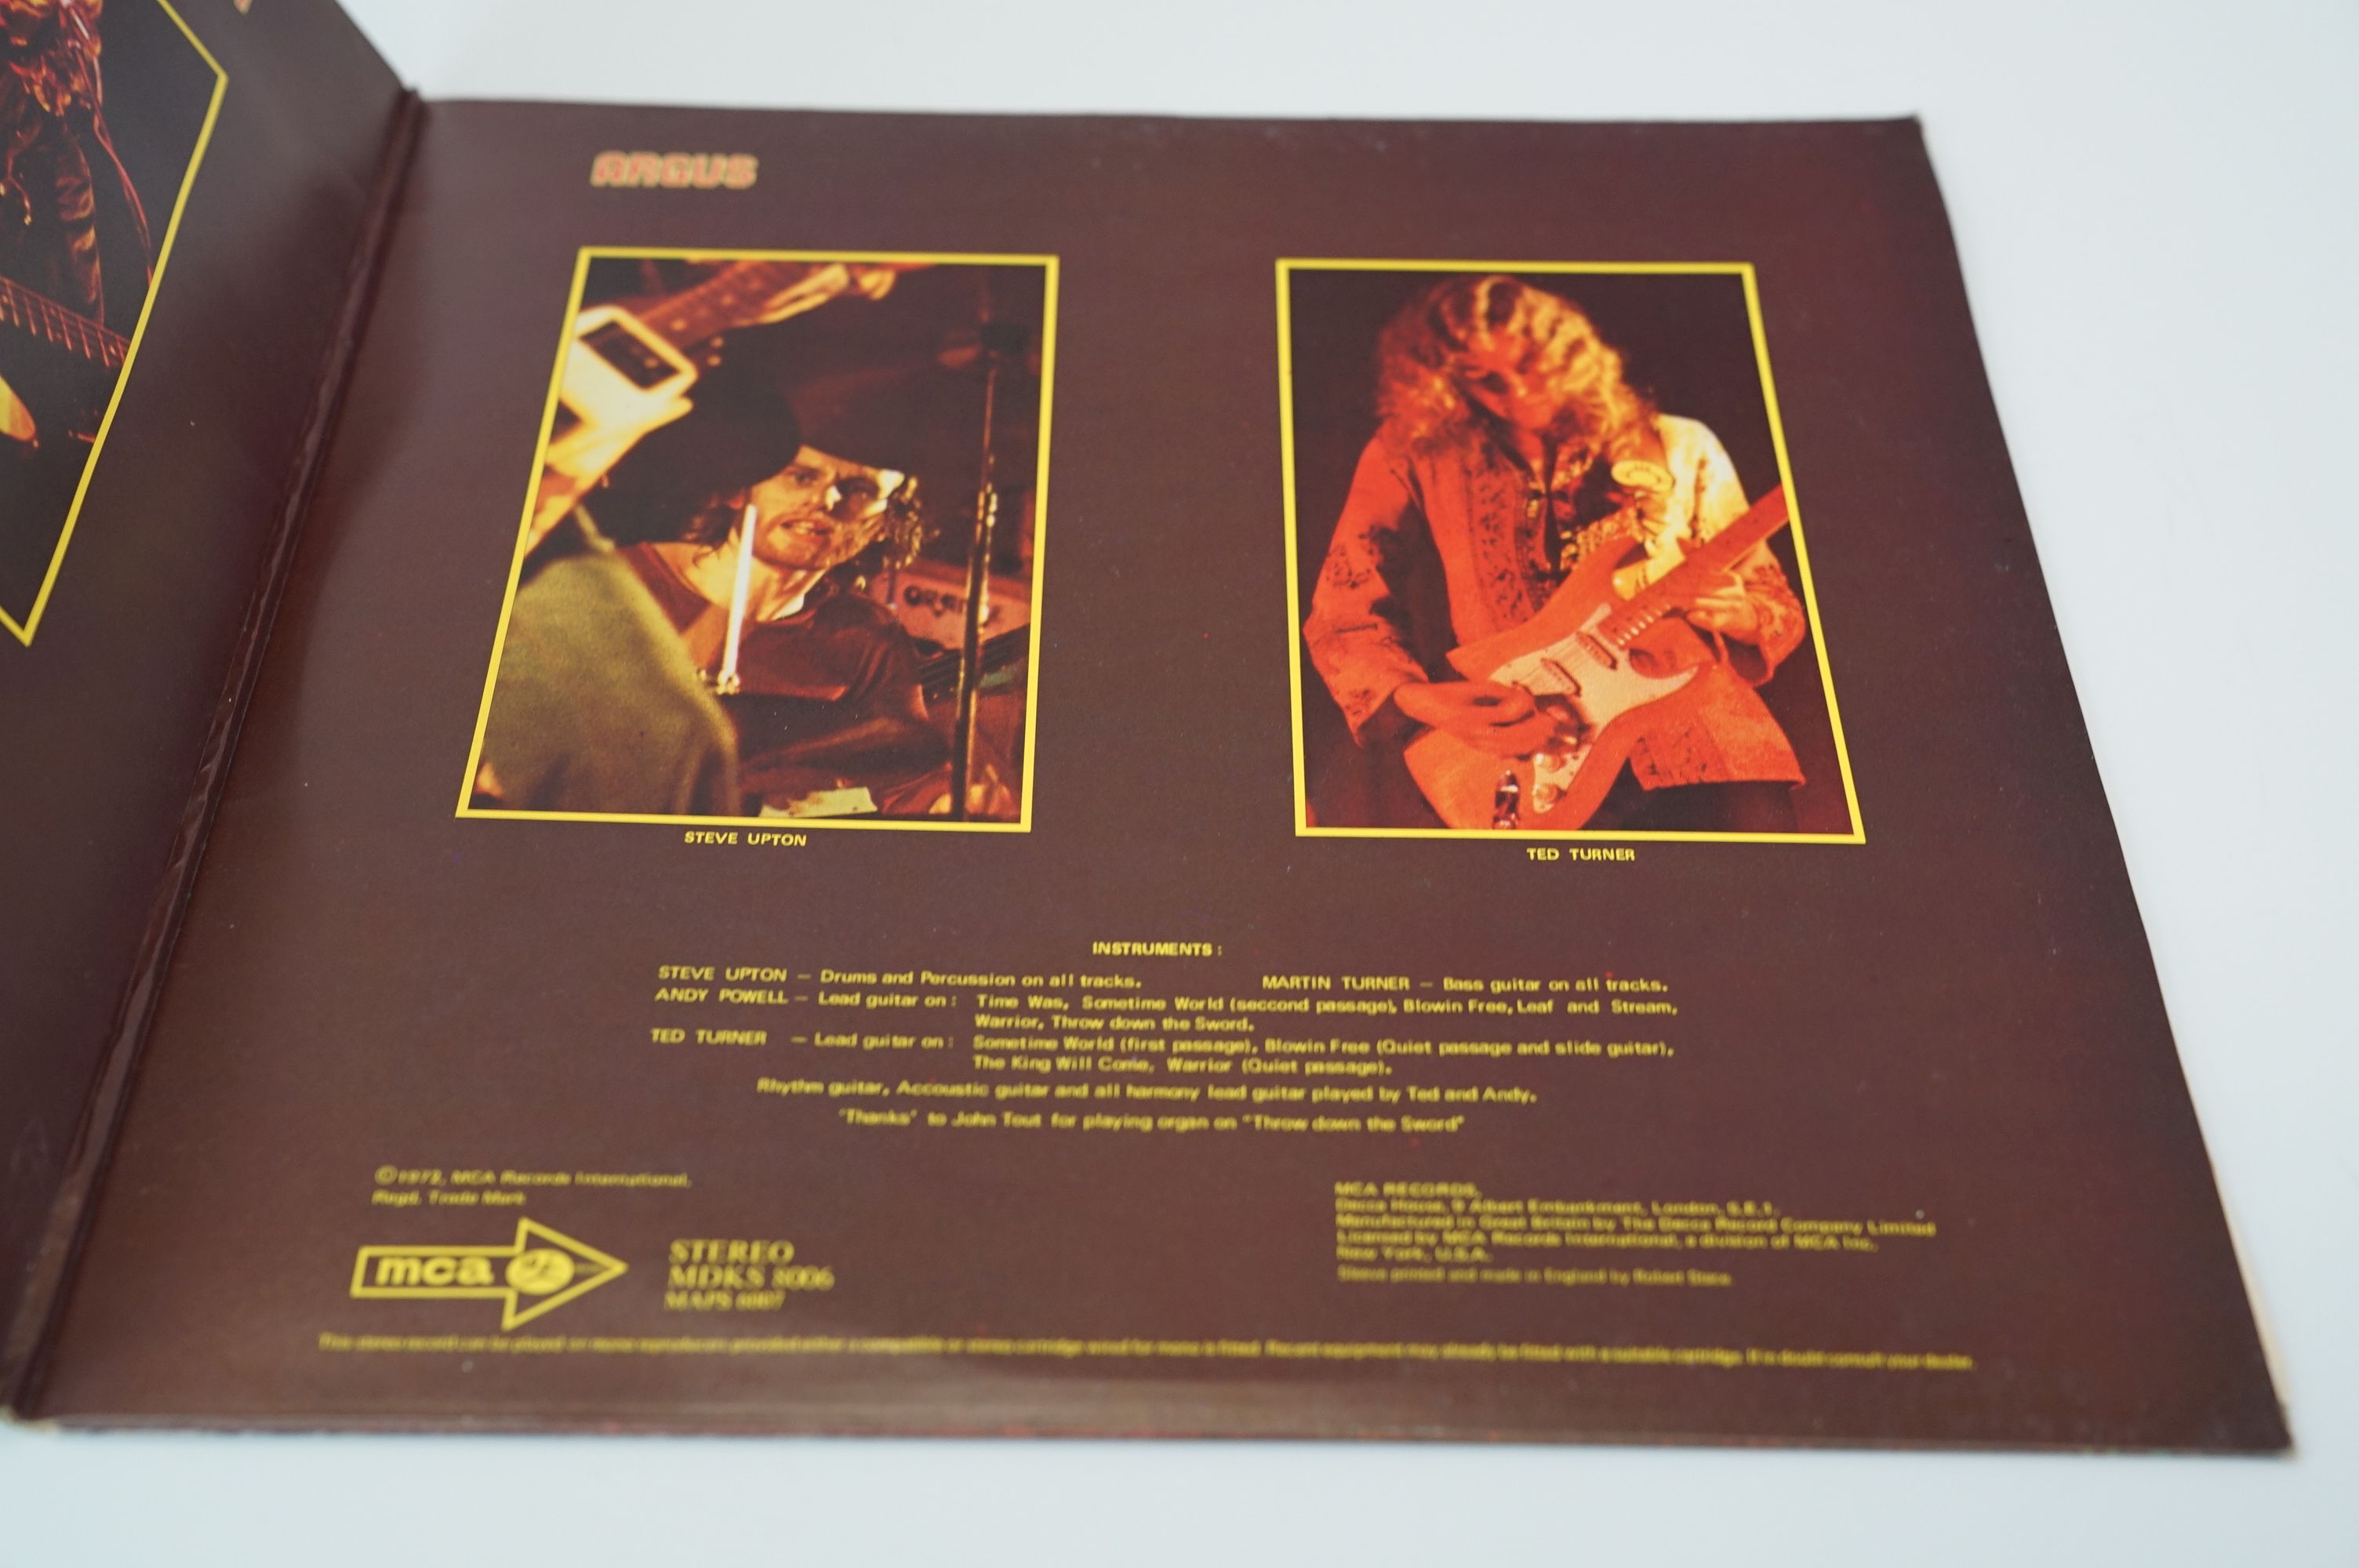 Vinyl - Wishbone Ash Argus on MCA MDKS 8006 vinyl & sleeves vg+ - Image 2 of 8